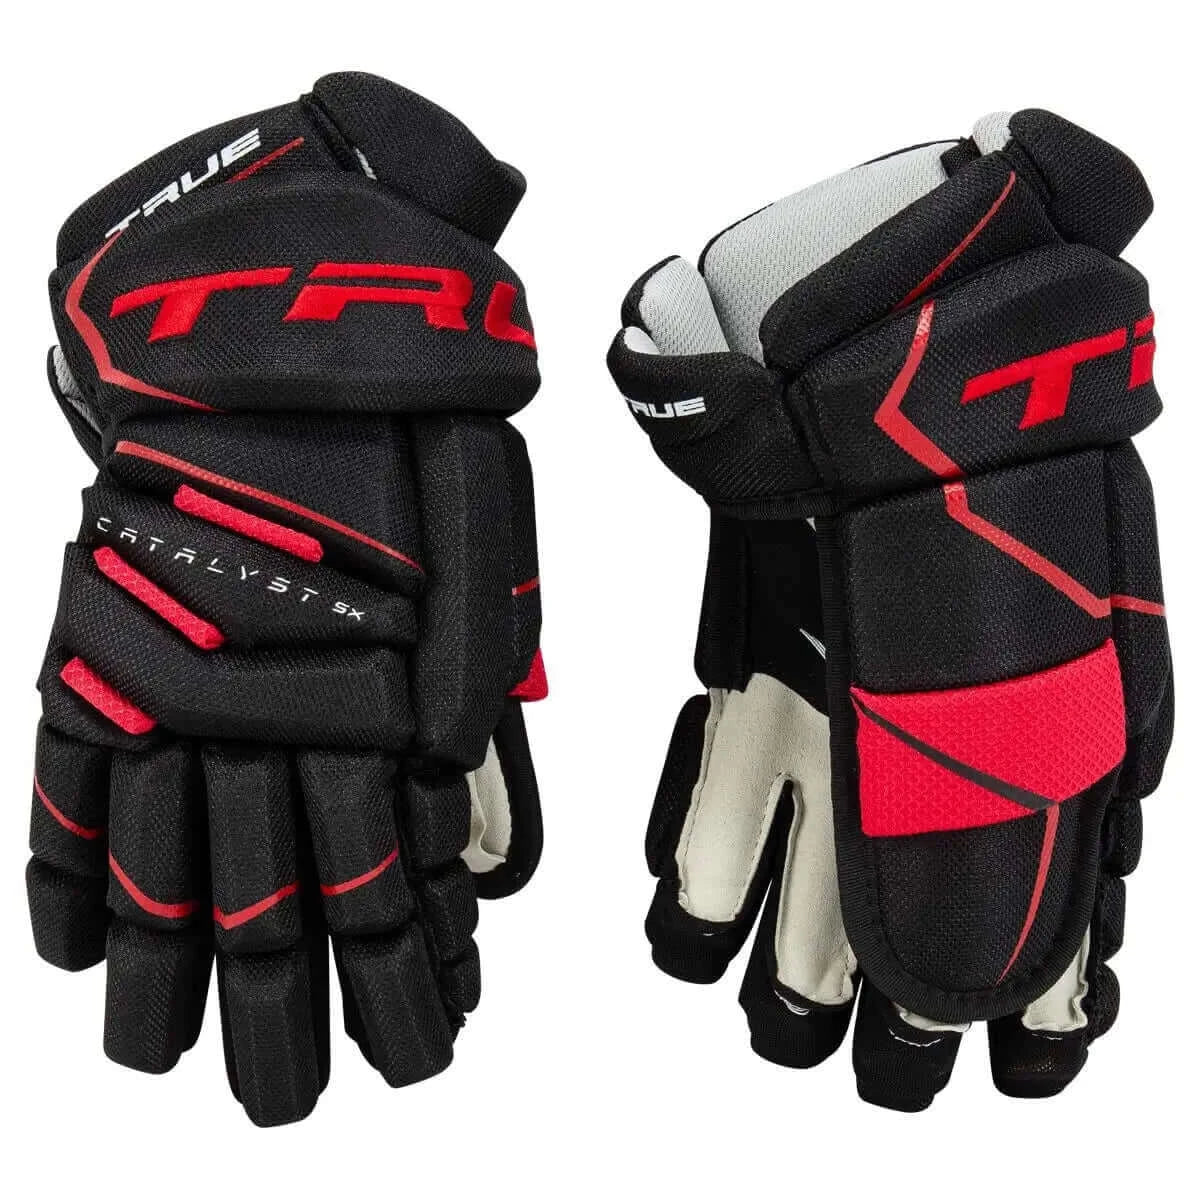 True Catalyst 5X Hockey Gloves Sr